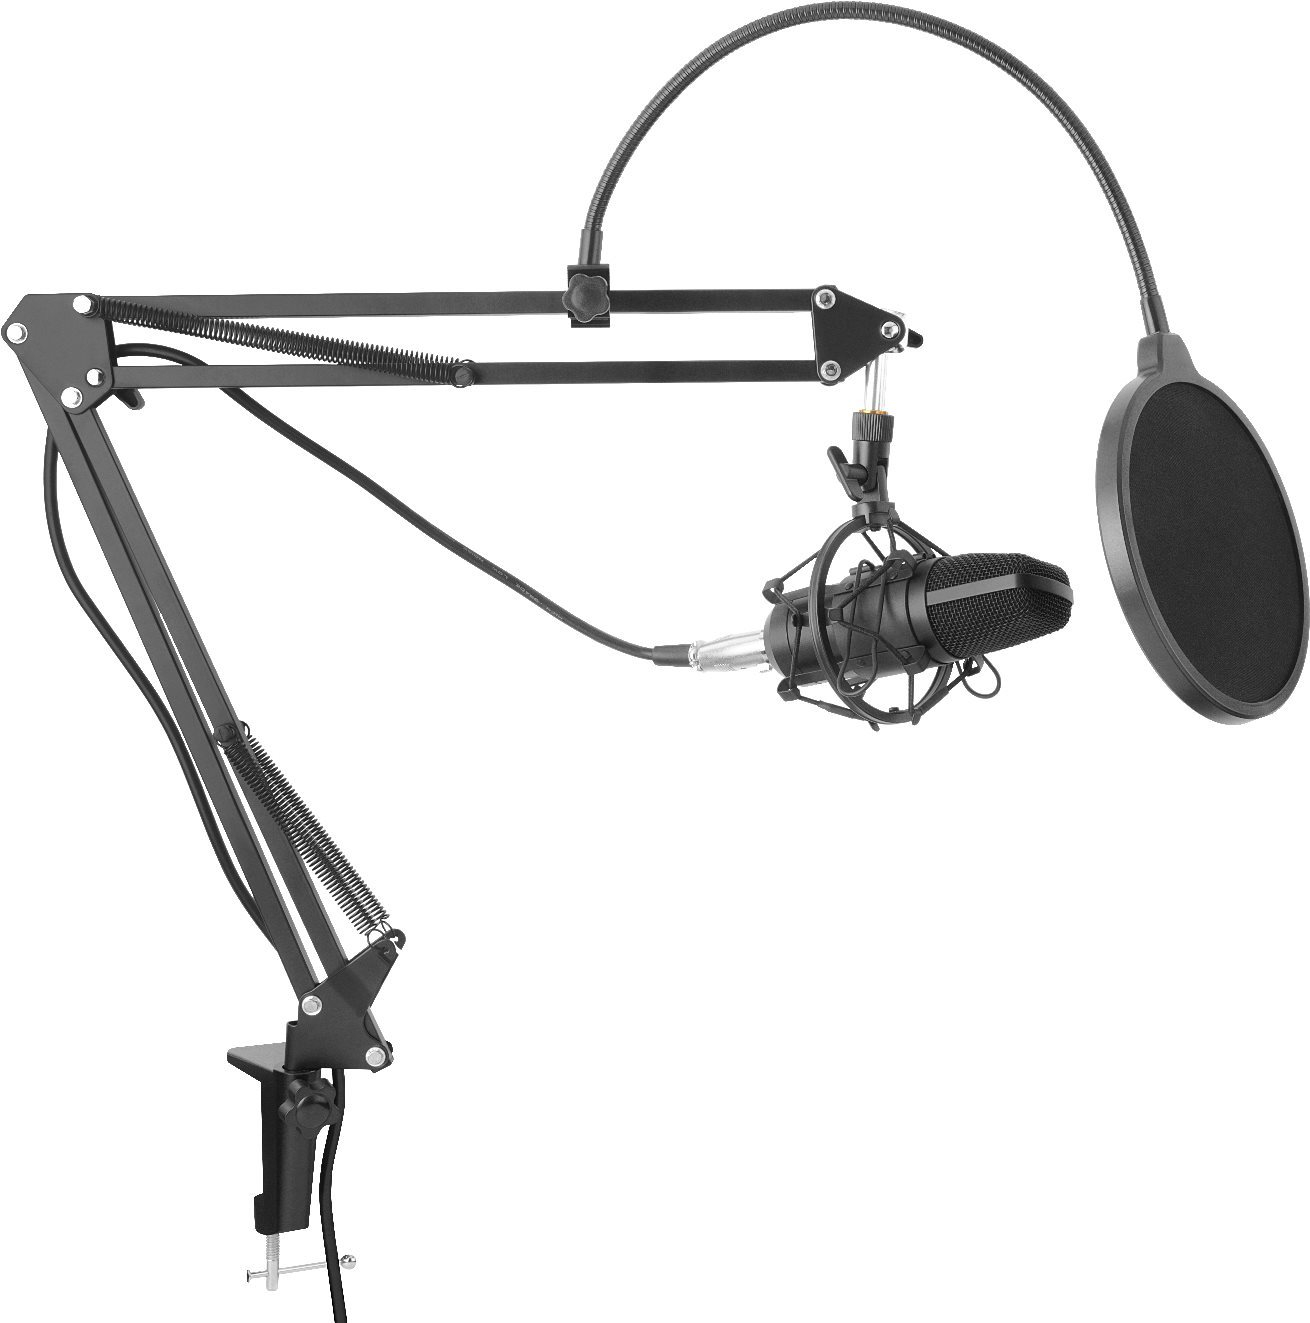 Mikrofon Yenkee YMC 1030